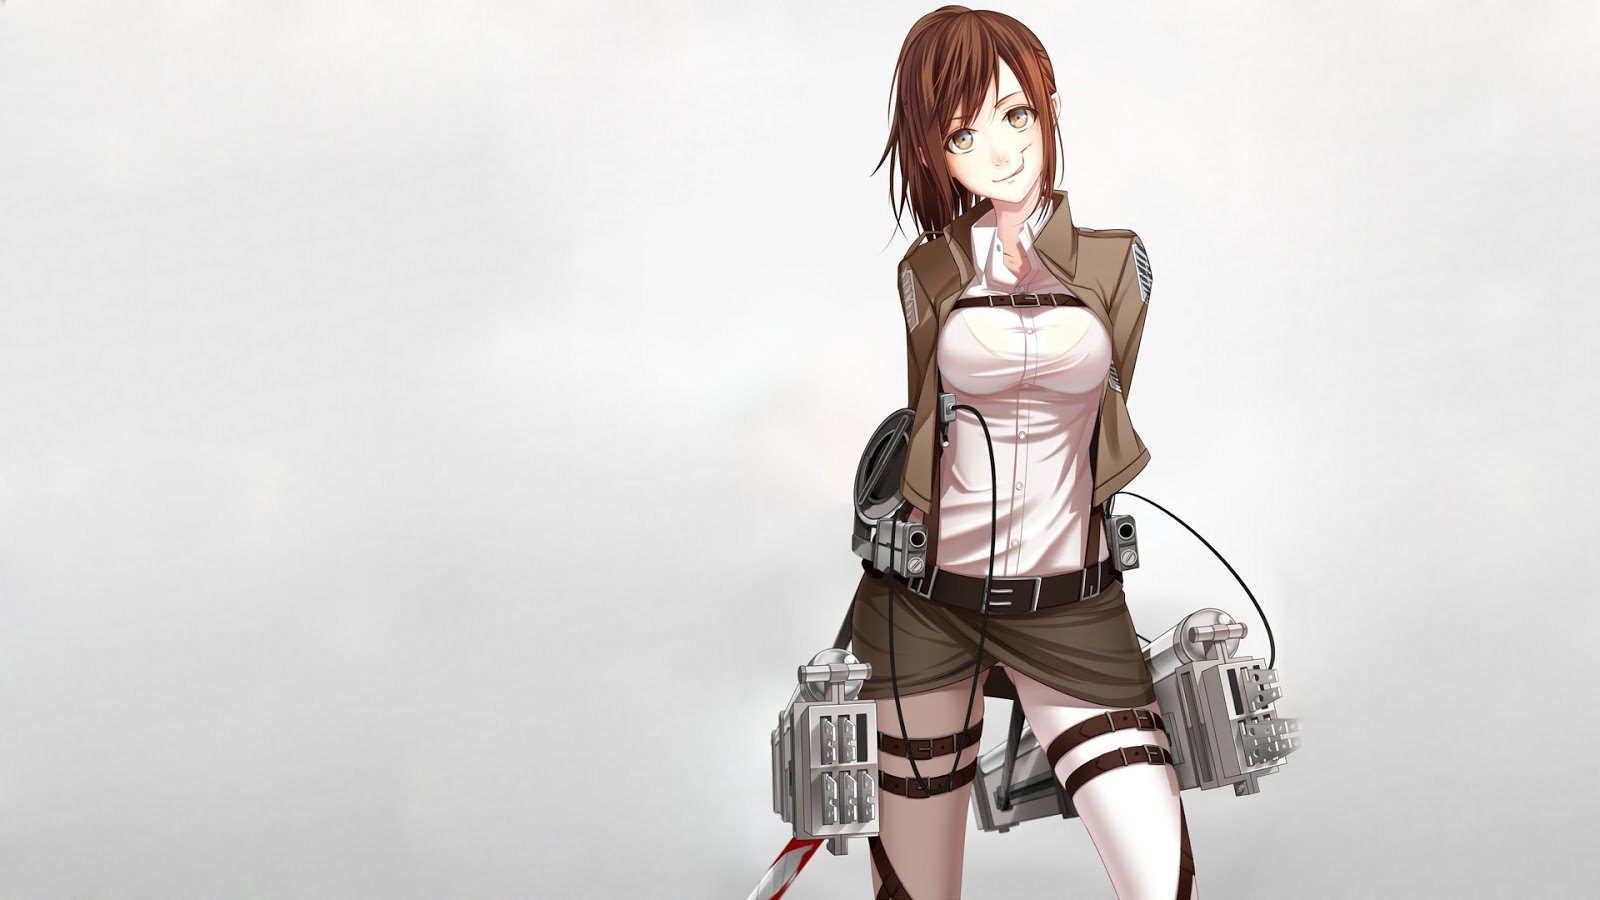  no Kyojin Anime Girl Weapon Beautiful HD Wallpaper Backgrounds f8 1600x900